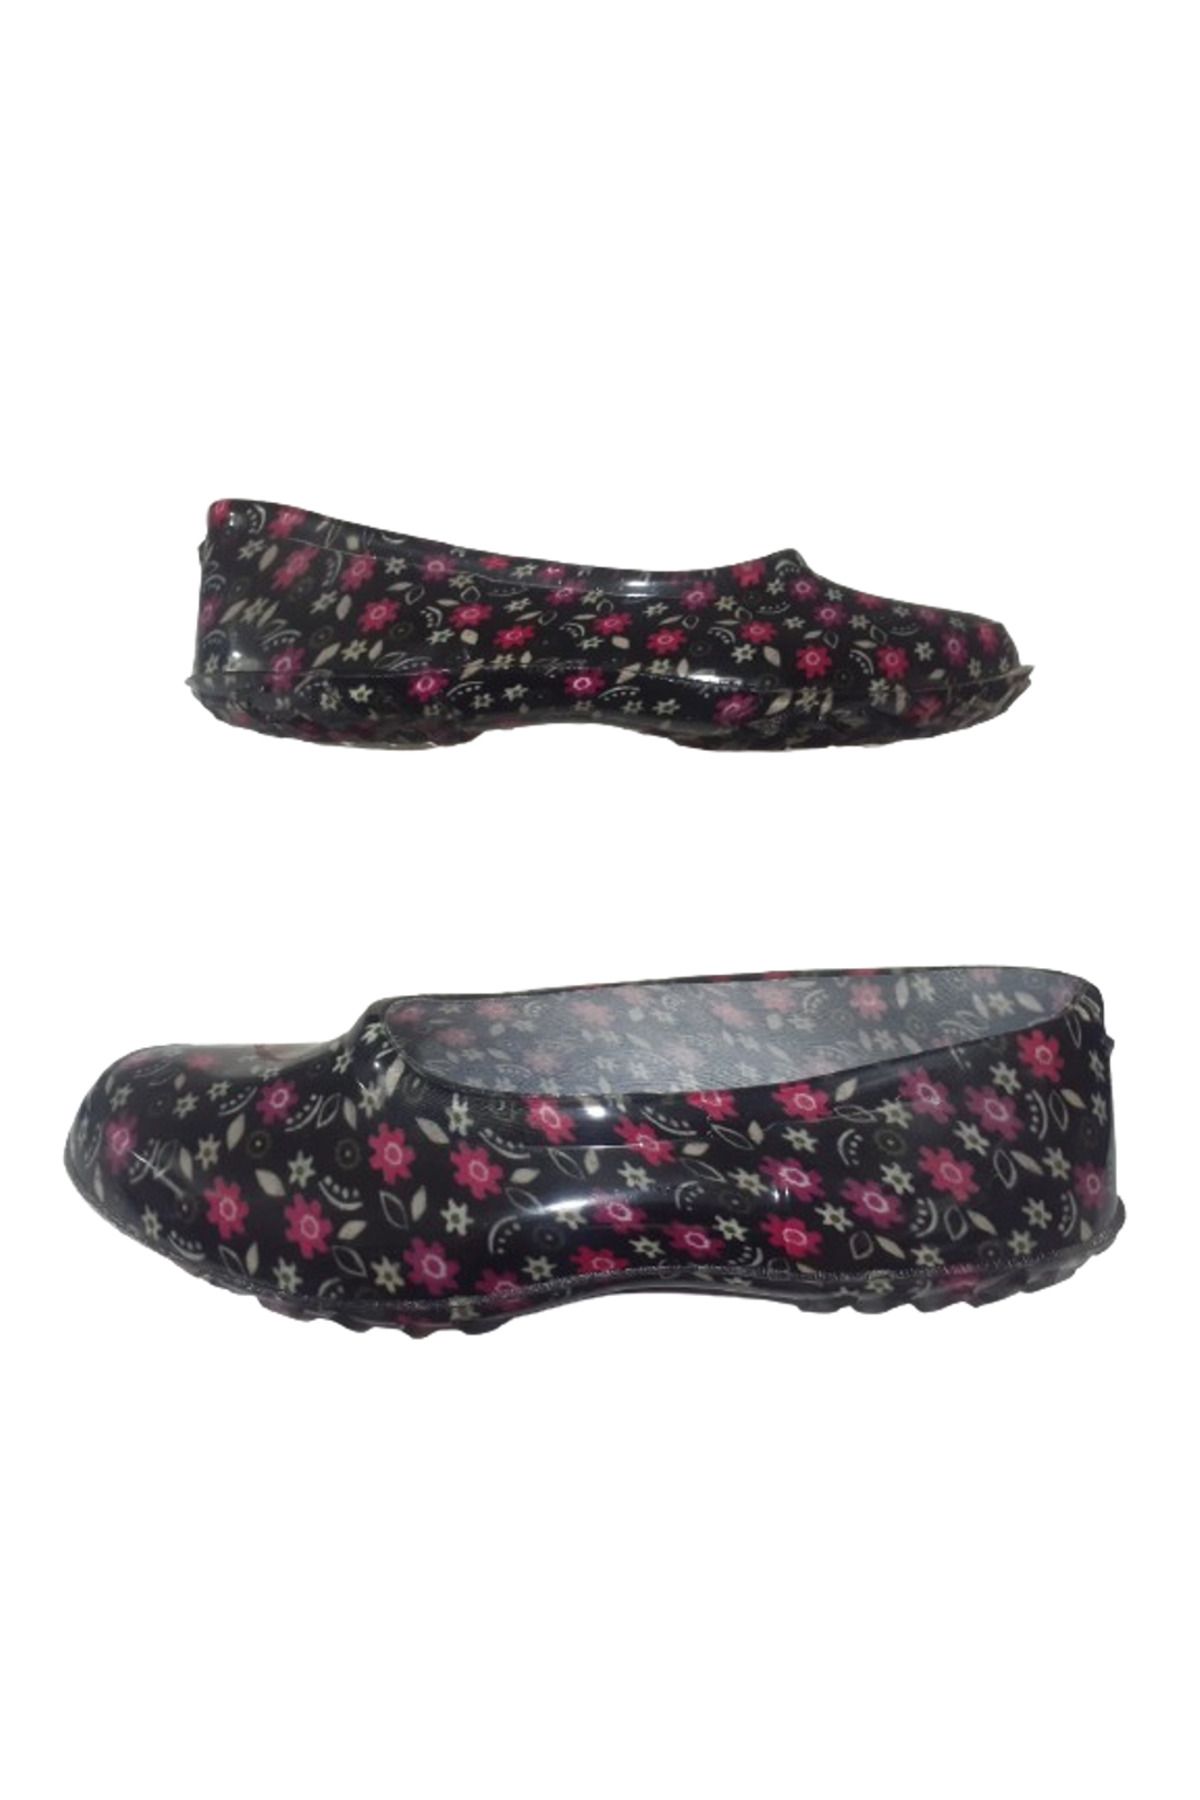 Emek Lastik Kadın Siyah-Pembe Çiçek Desenli Kaymaz Taban Iş Ayakkabısı Kkk8545